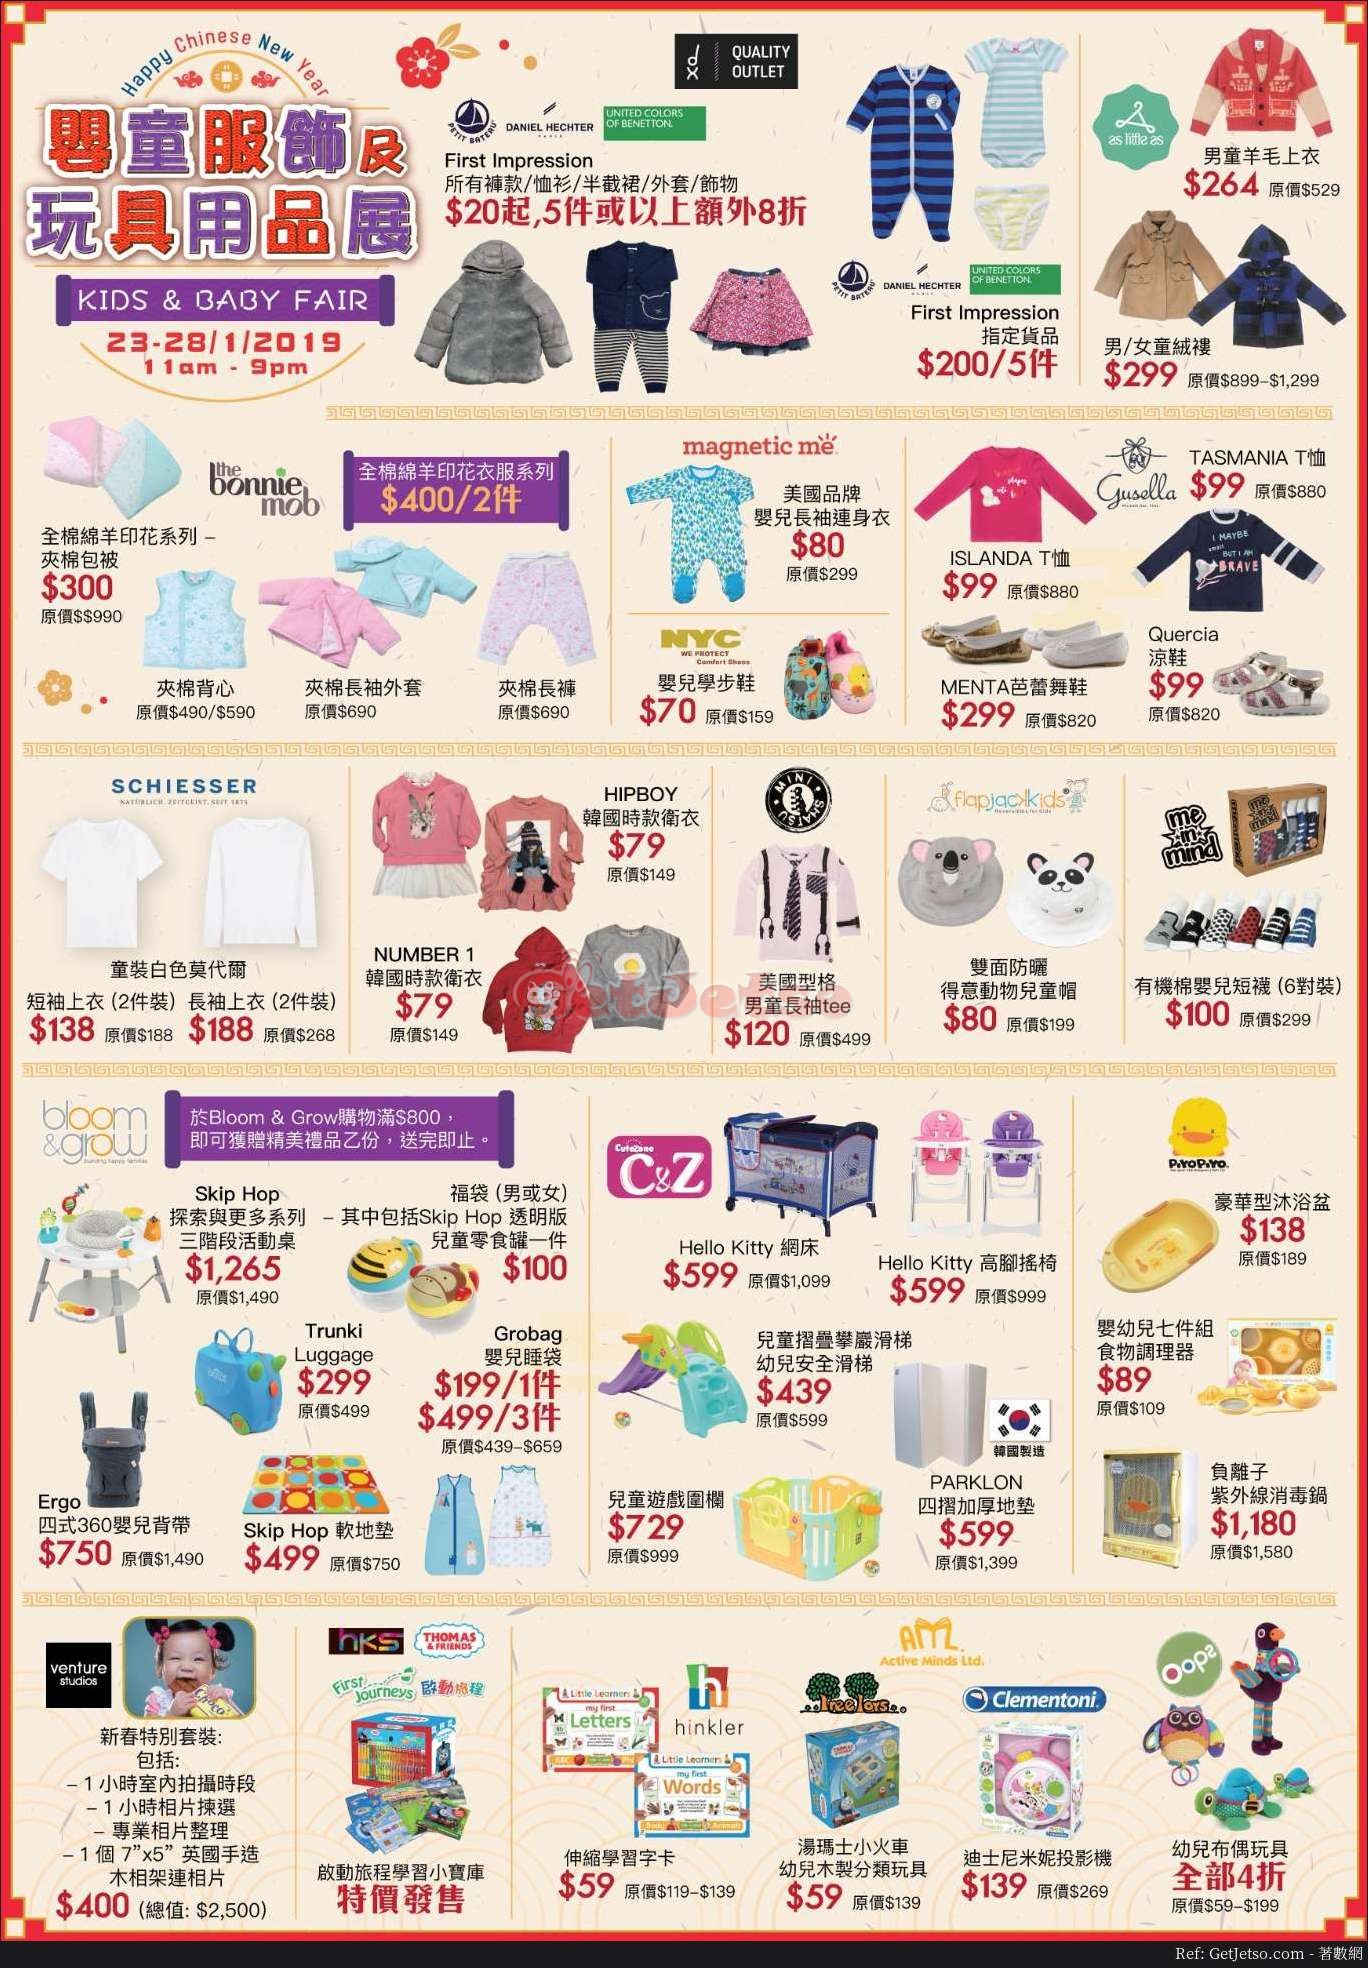 嬰童服飾及玩具用品展優惠@海港城(19年1月23-28日)圖片2